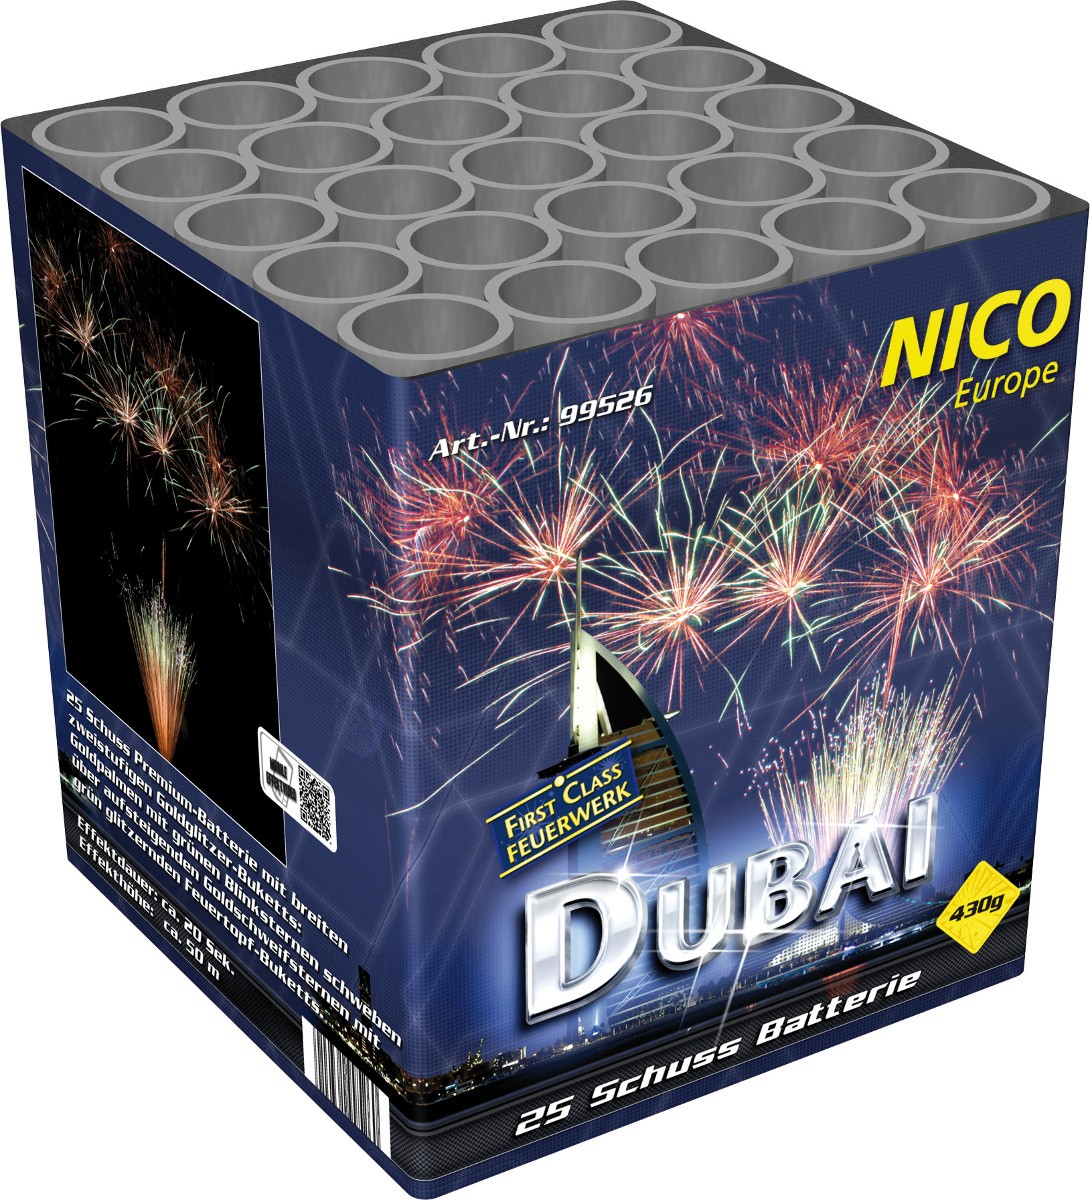 Premiumbatterie Dubai